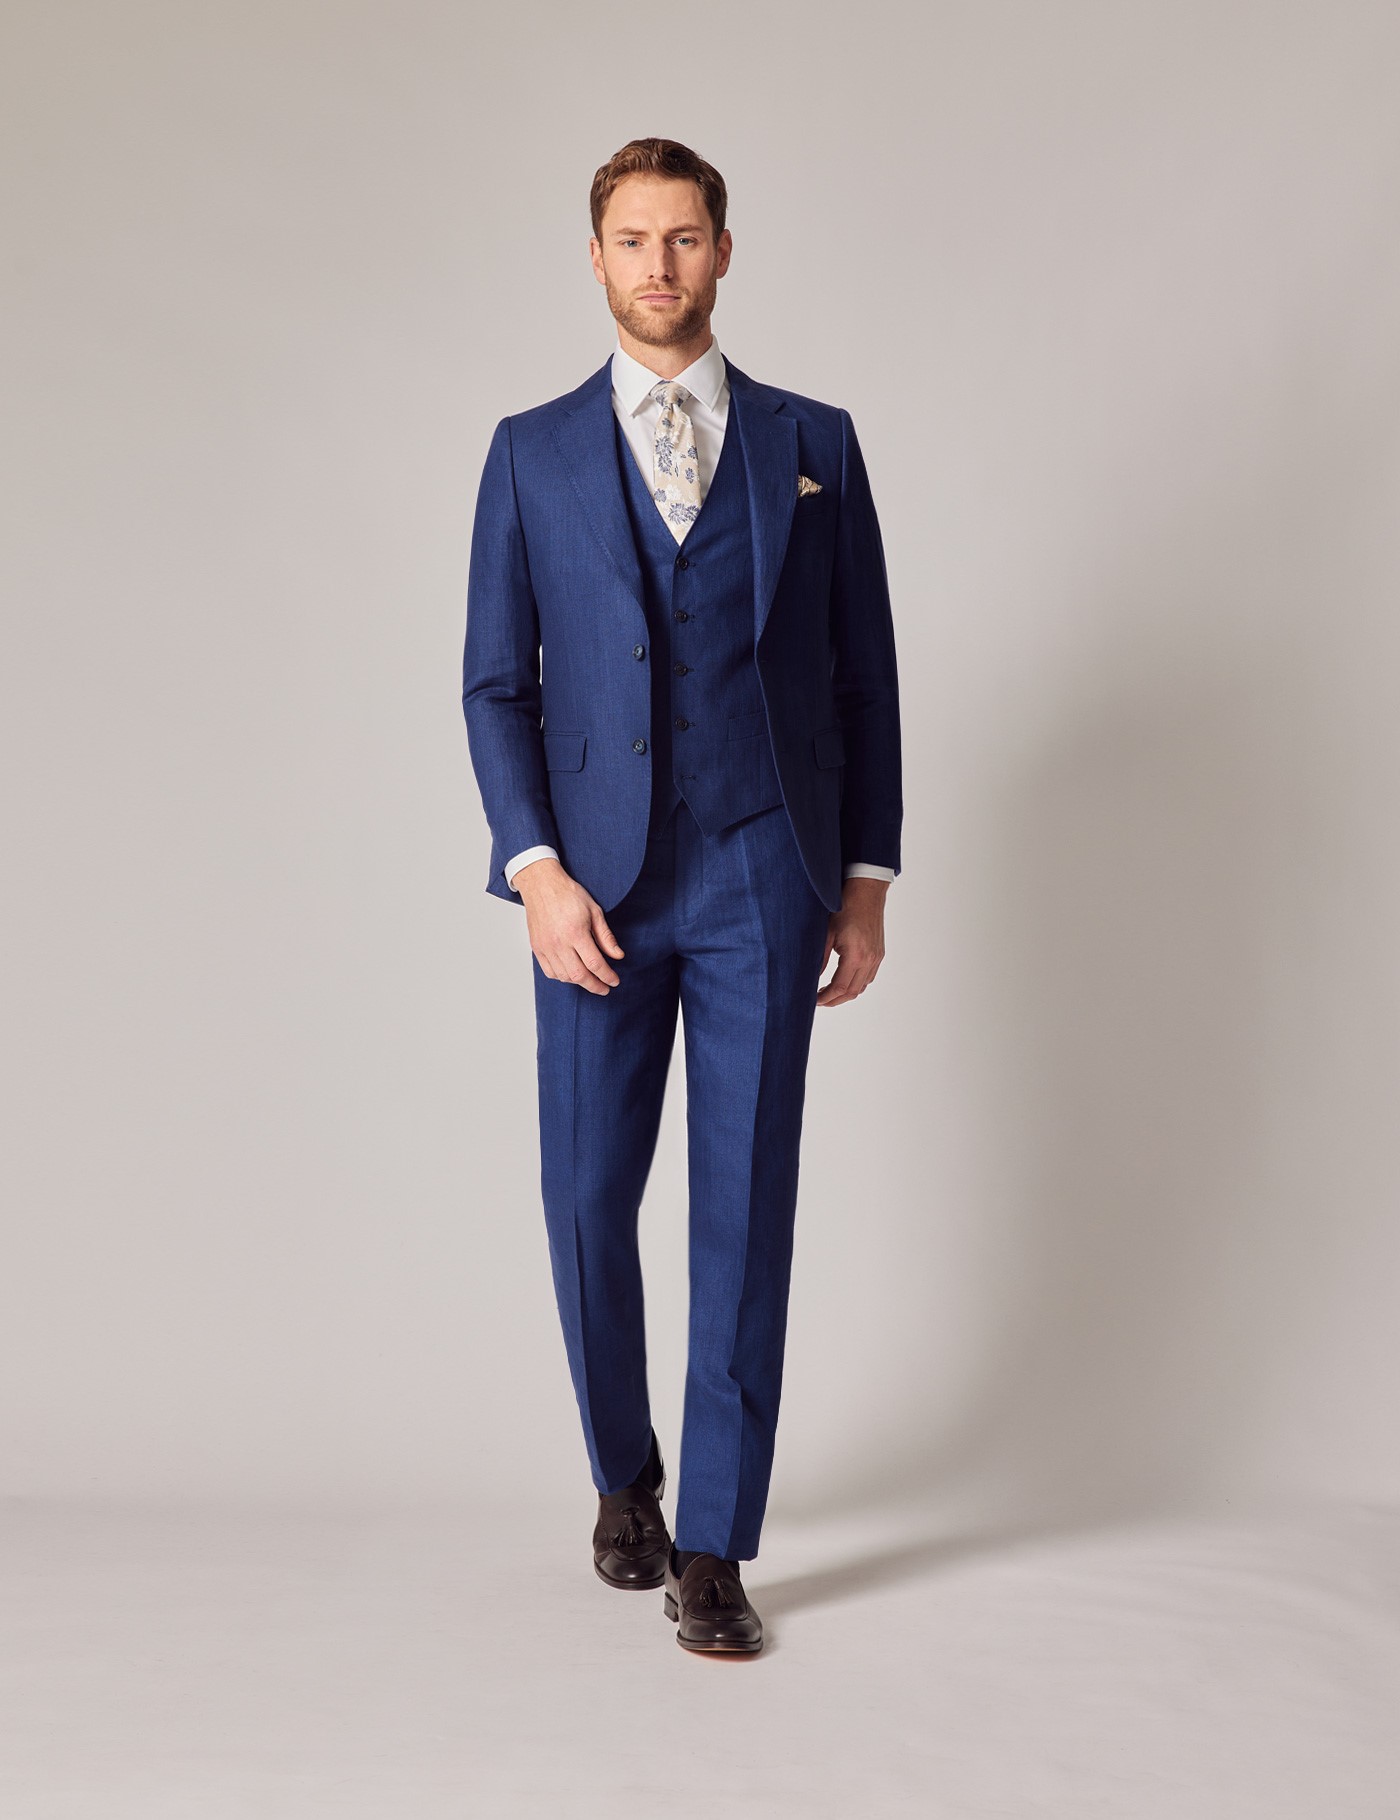 Top 293+ 3 piece blazer suit best